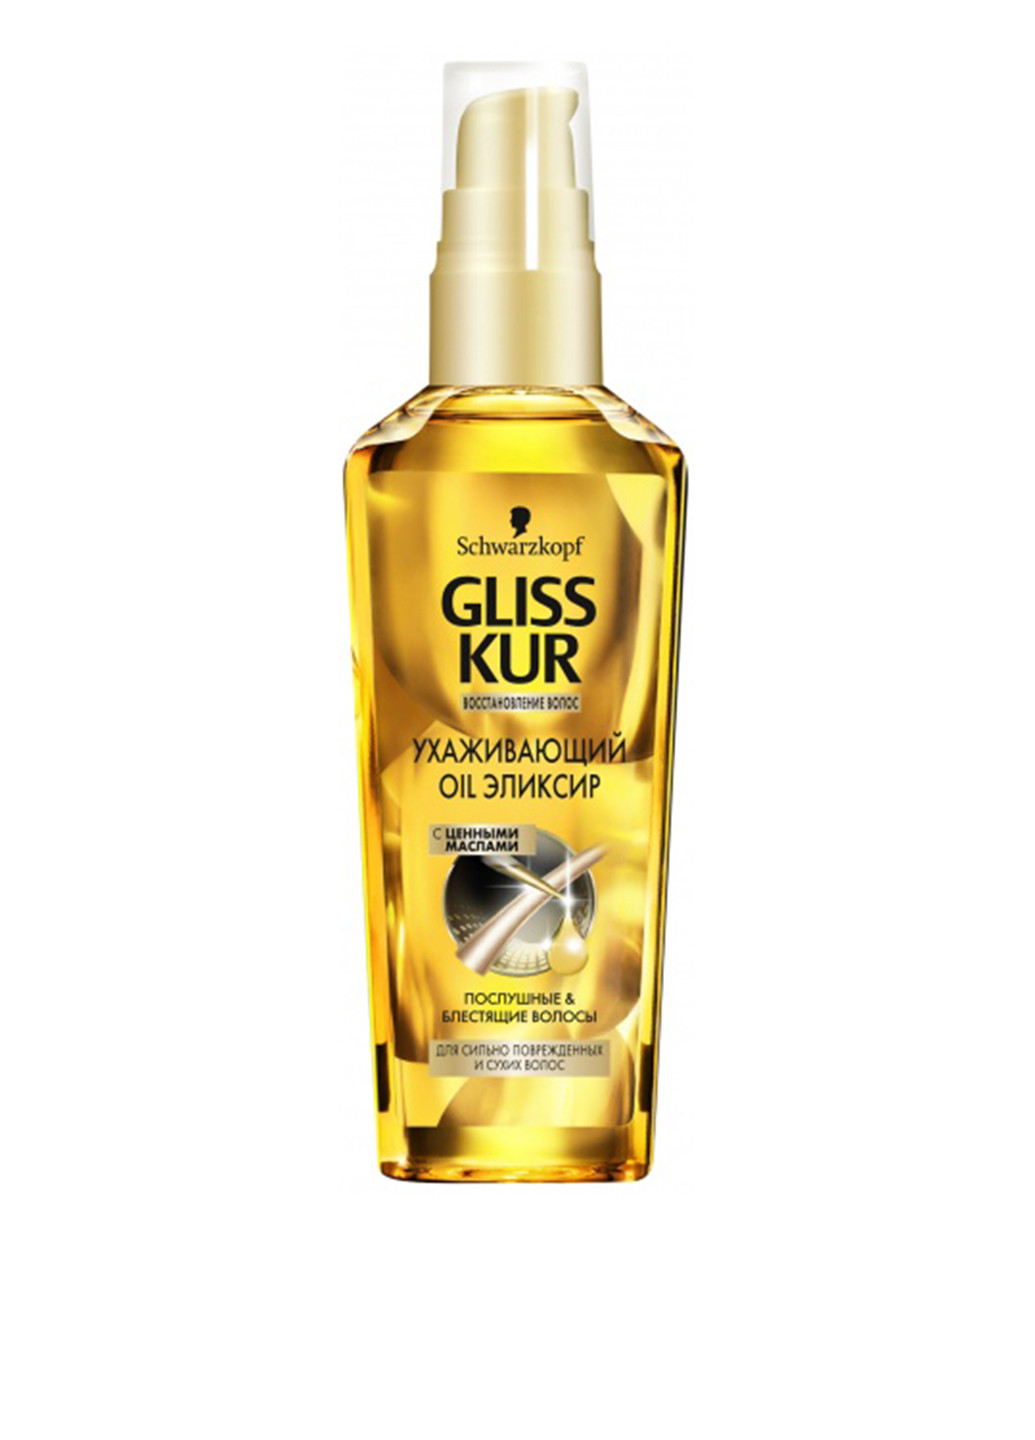 Еліксир Oil Nutritive для волосся, що січеться, 75 мл Gliss Kur (131708730)